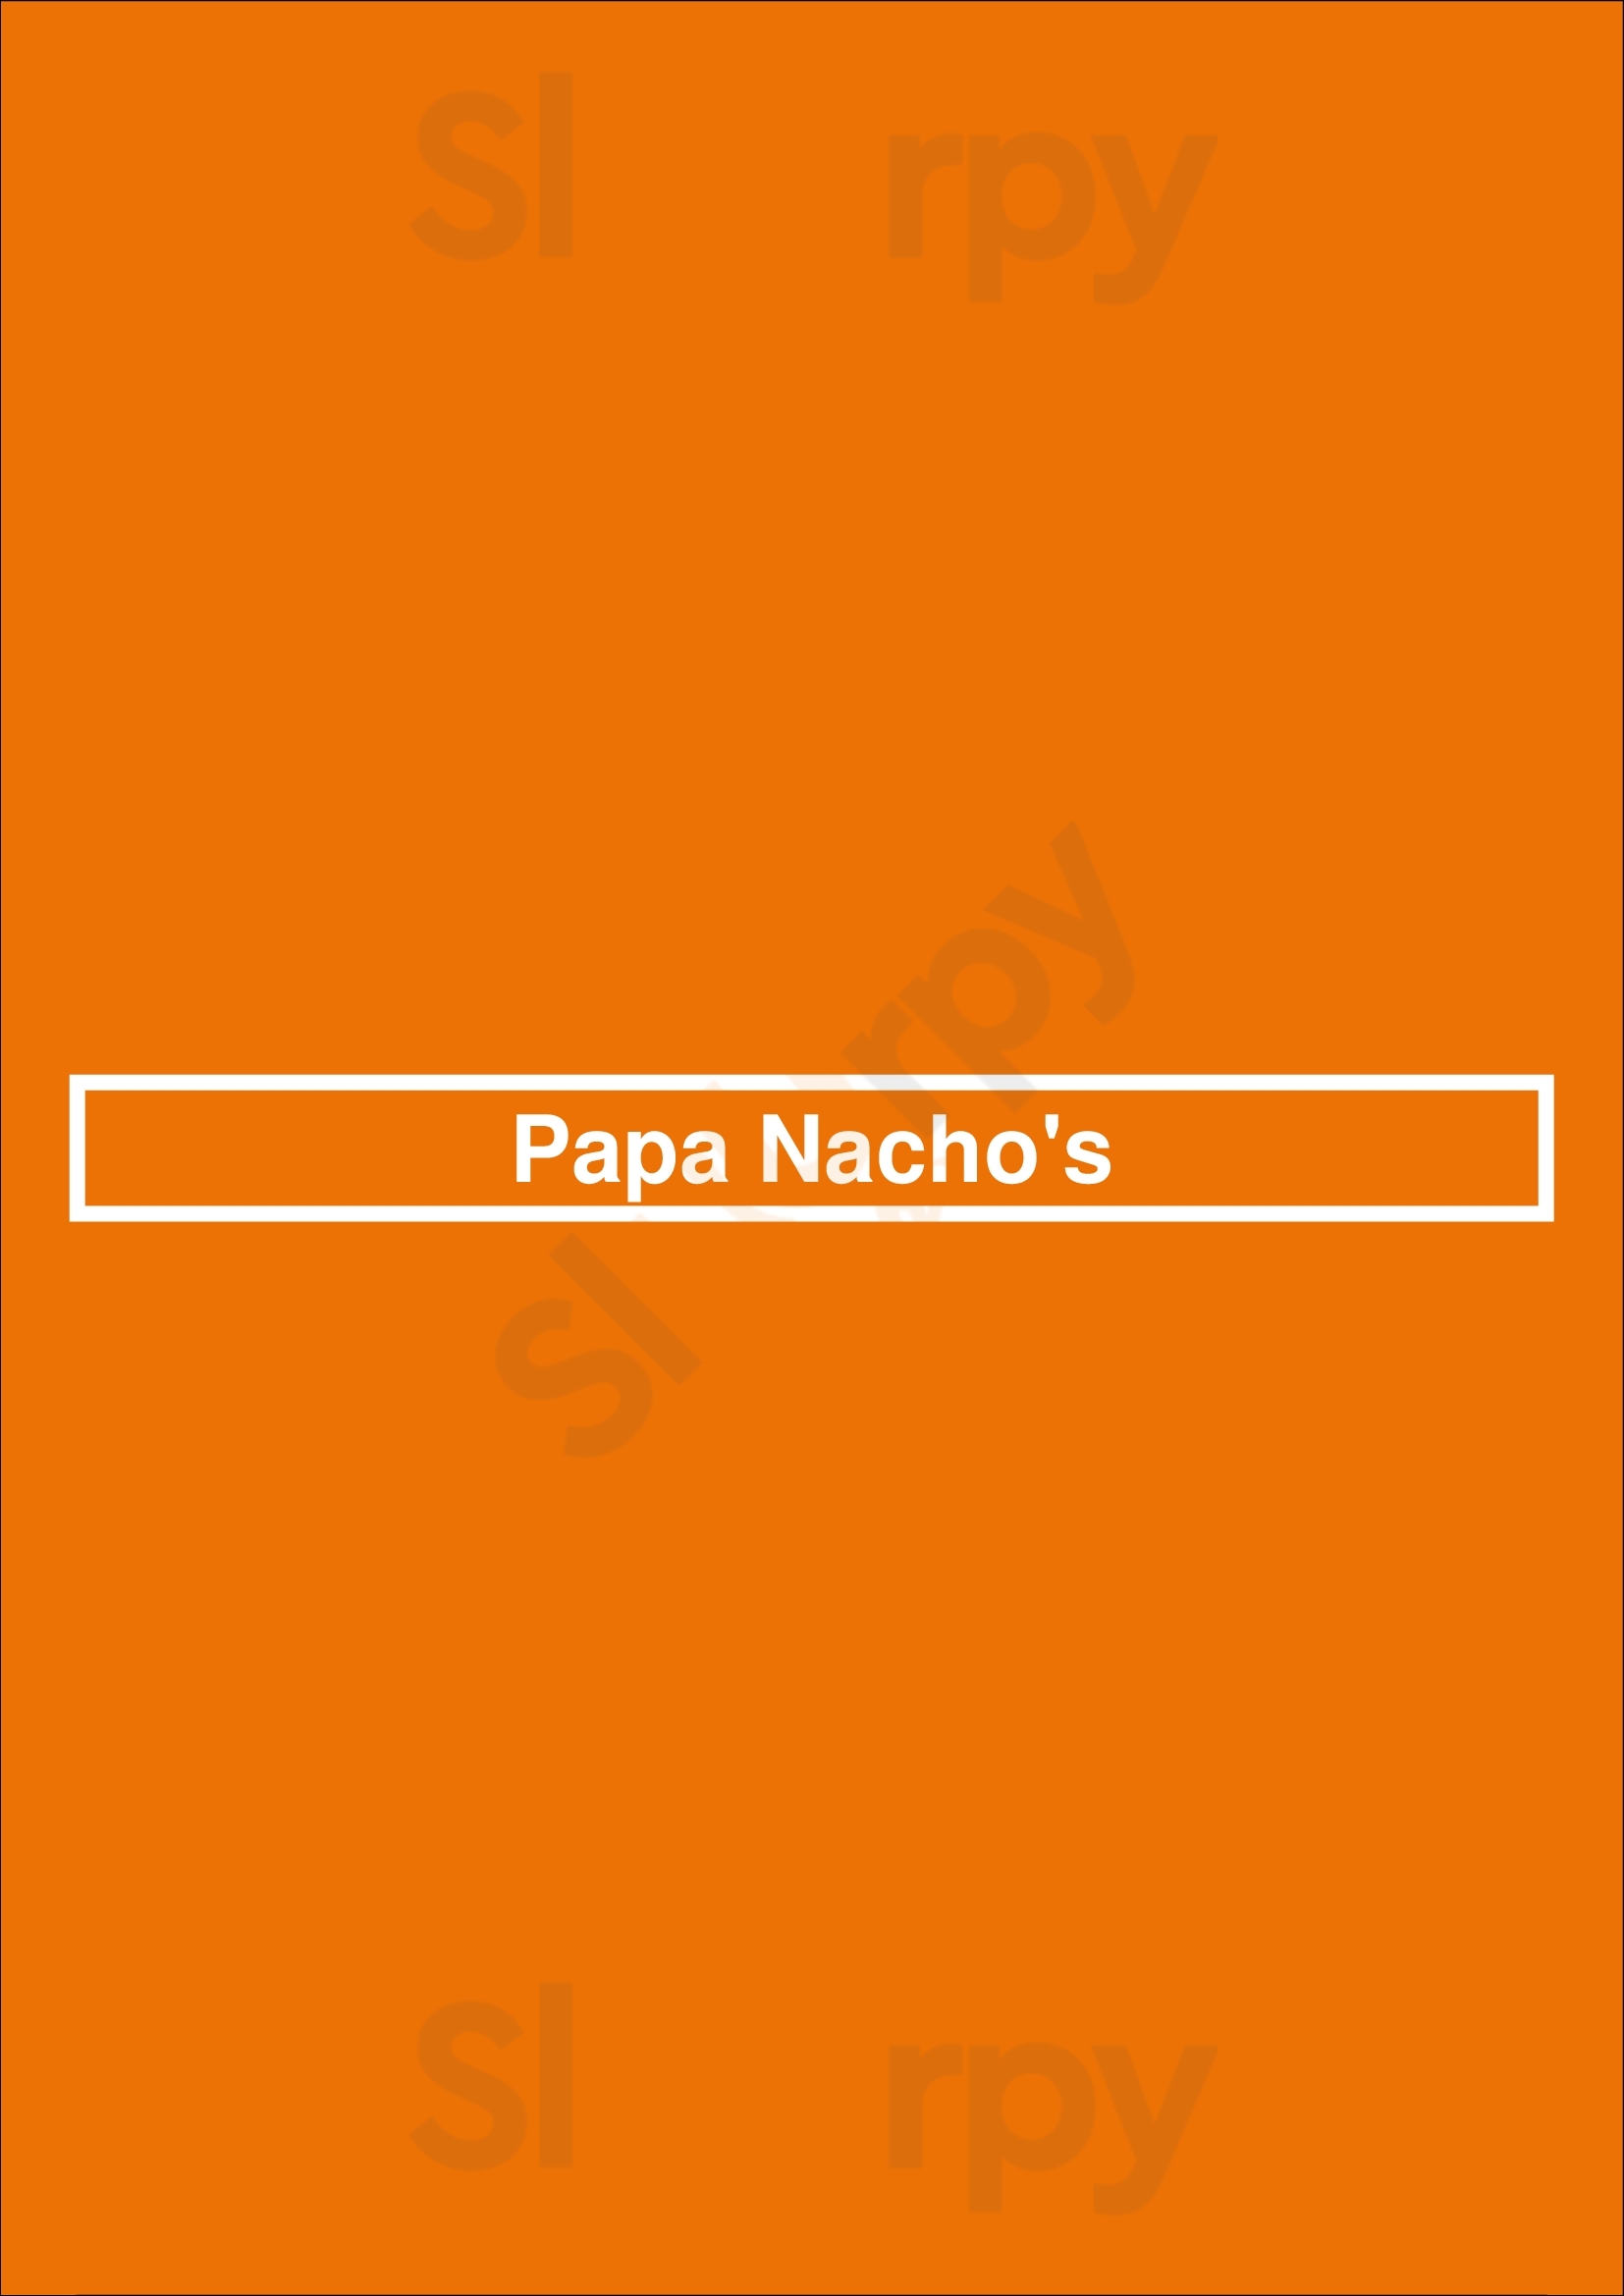 Papa Nacho's Albuquerque Menu - 1